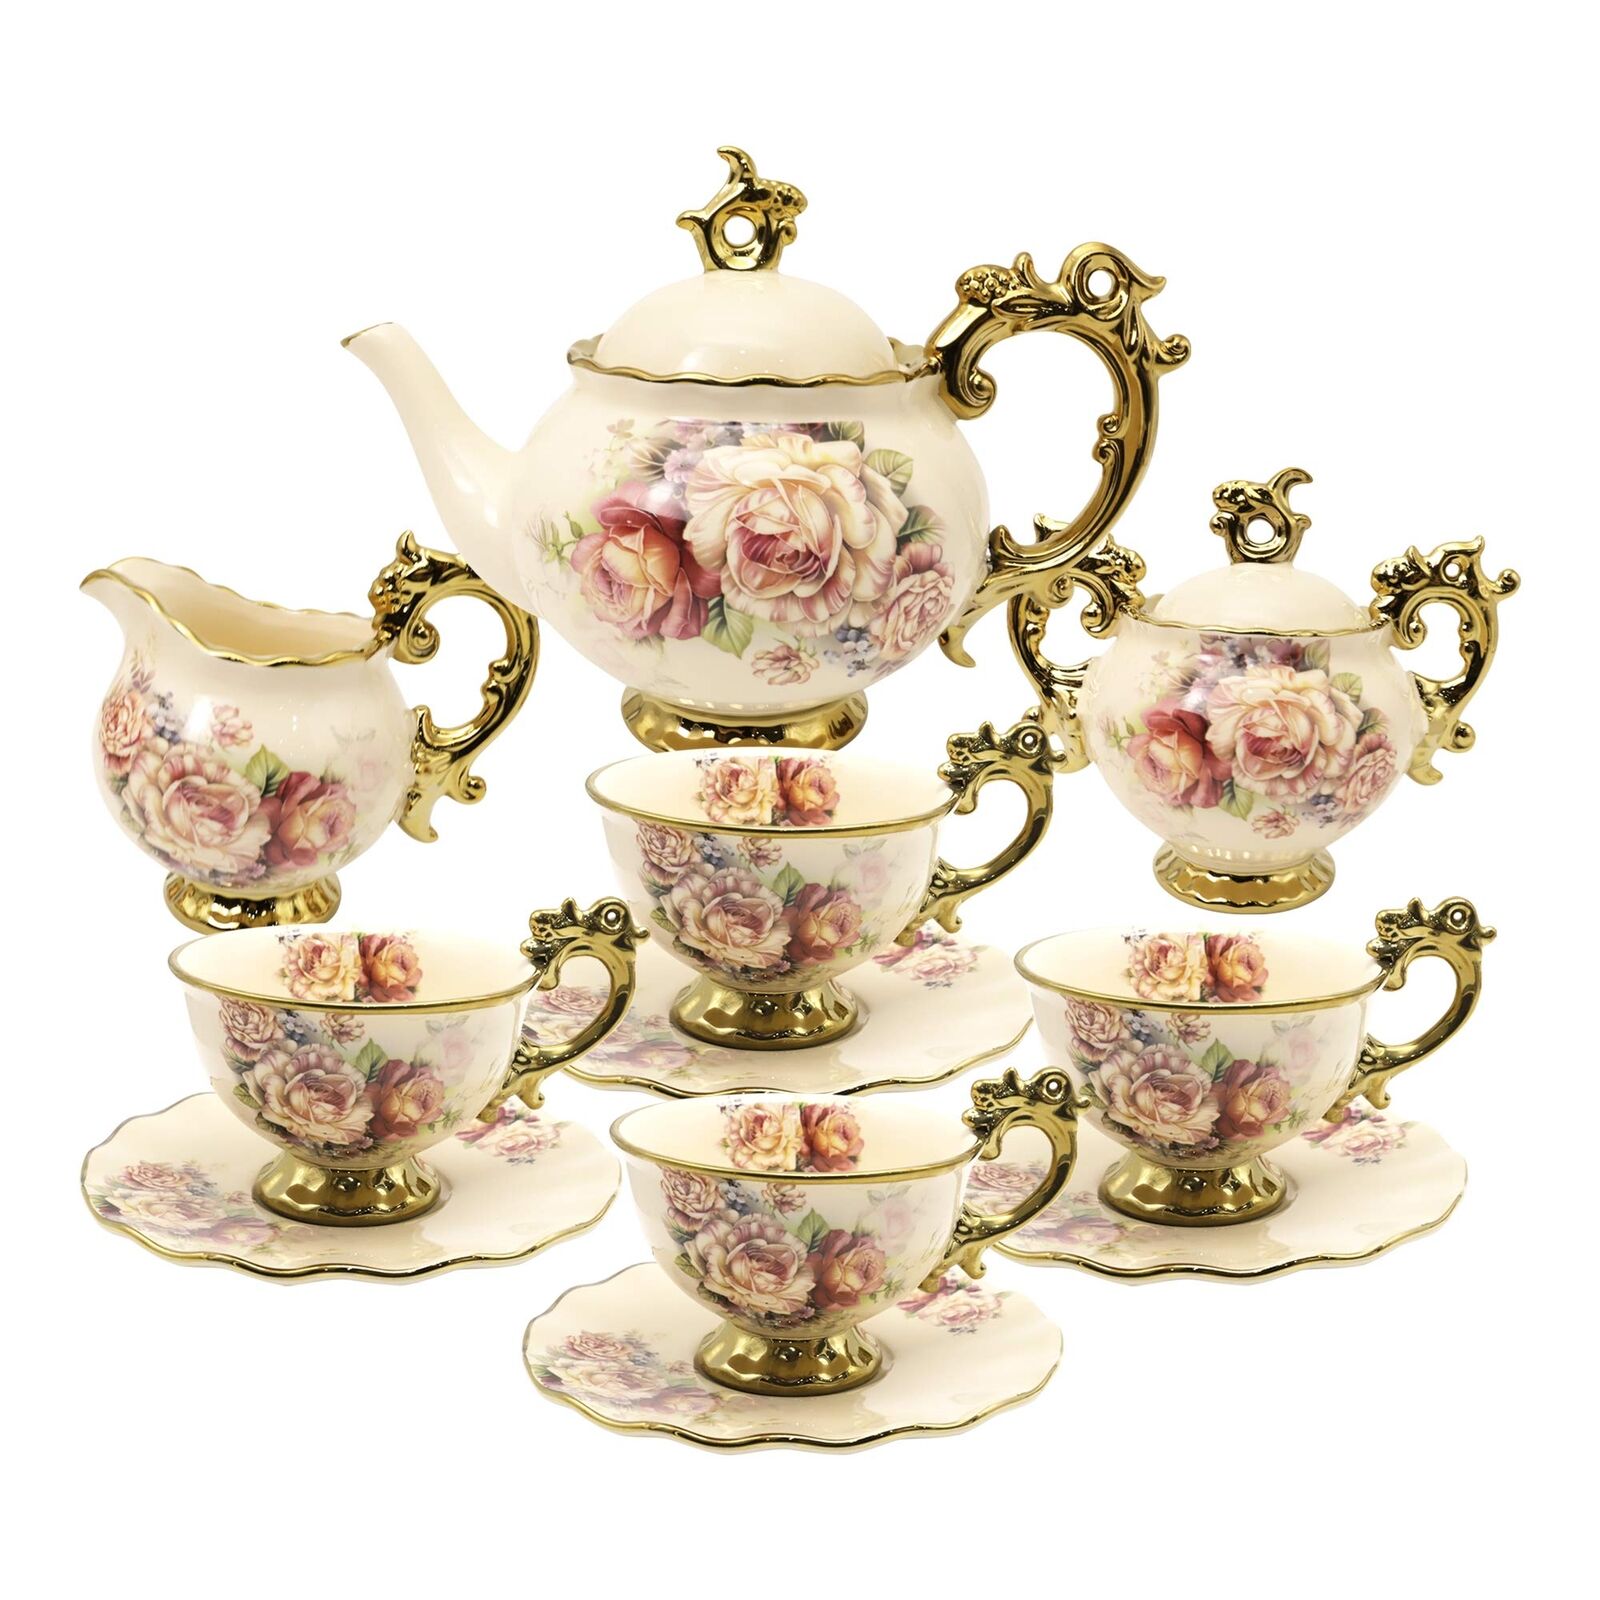 fanquare 15 Pieces British Porcelain Tea Set Floral Vintage China Coffee Set ...